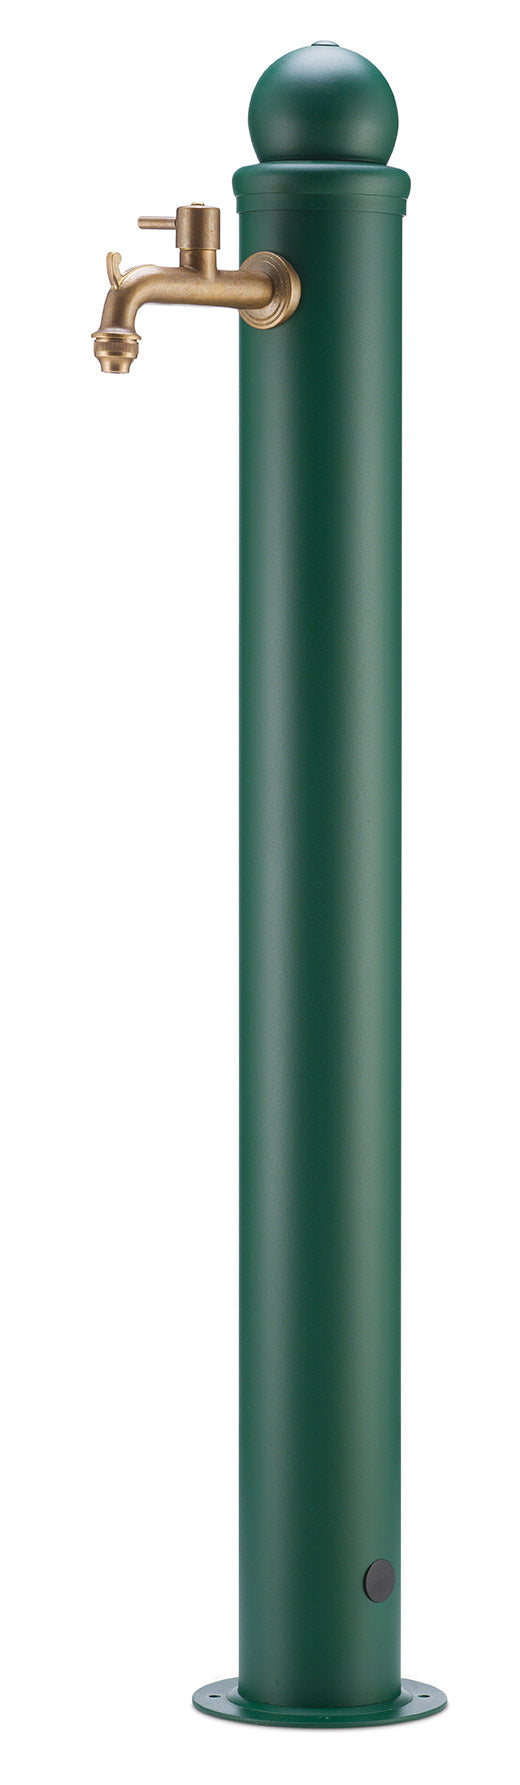 prezzo Fontana da Giardino Alta con Rubinetto Belfer 42/ARM Verde